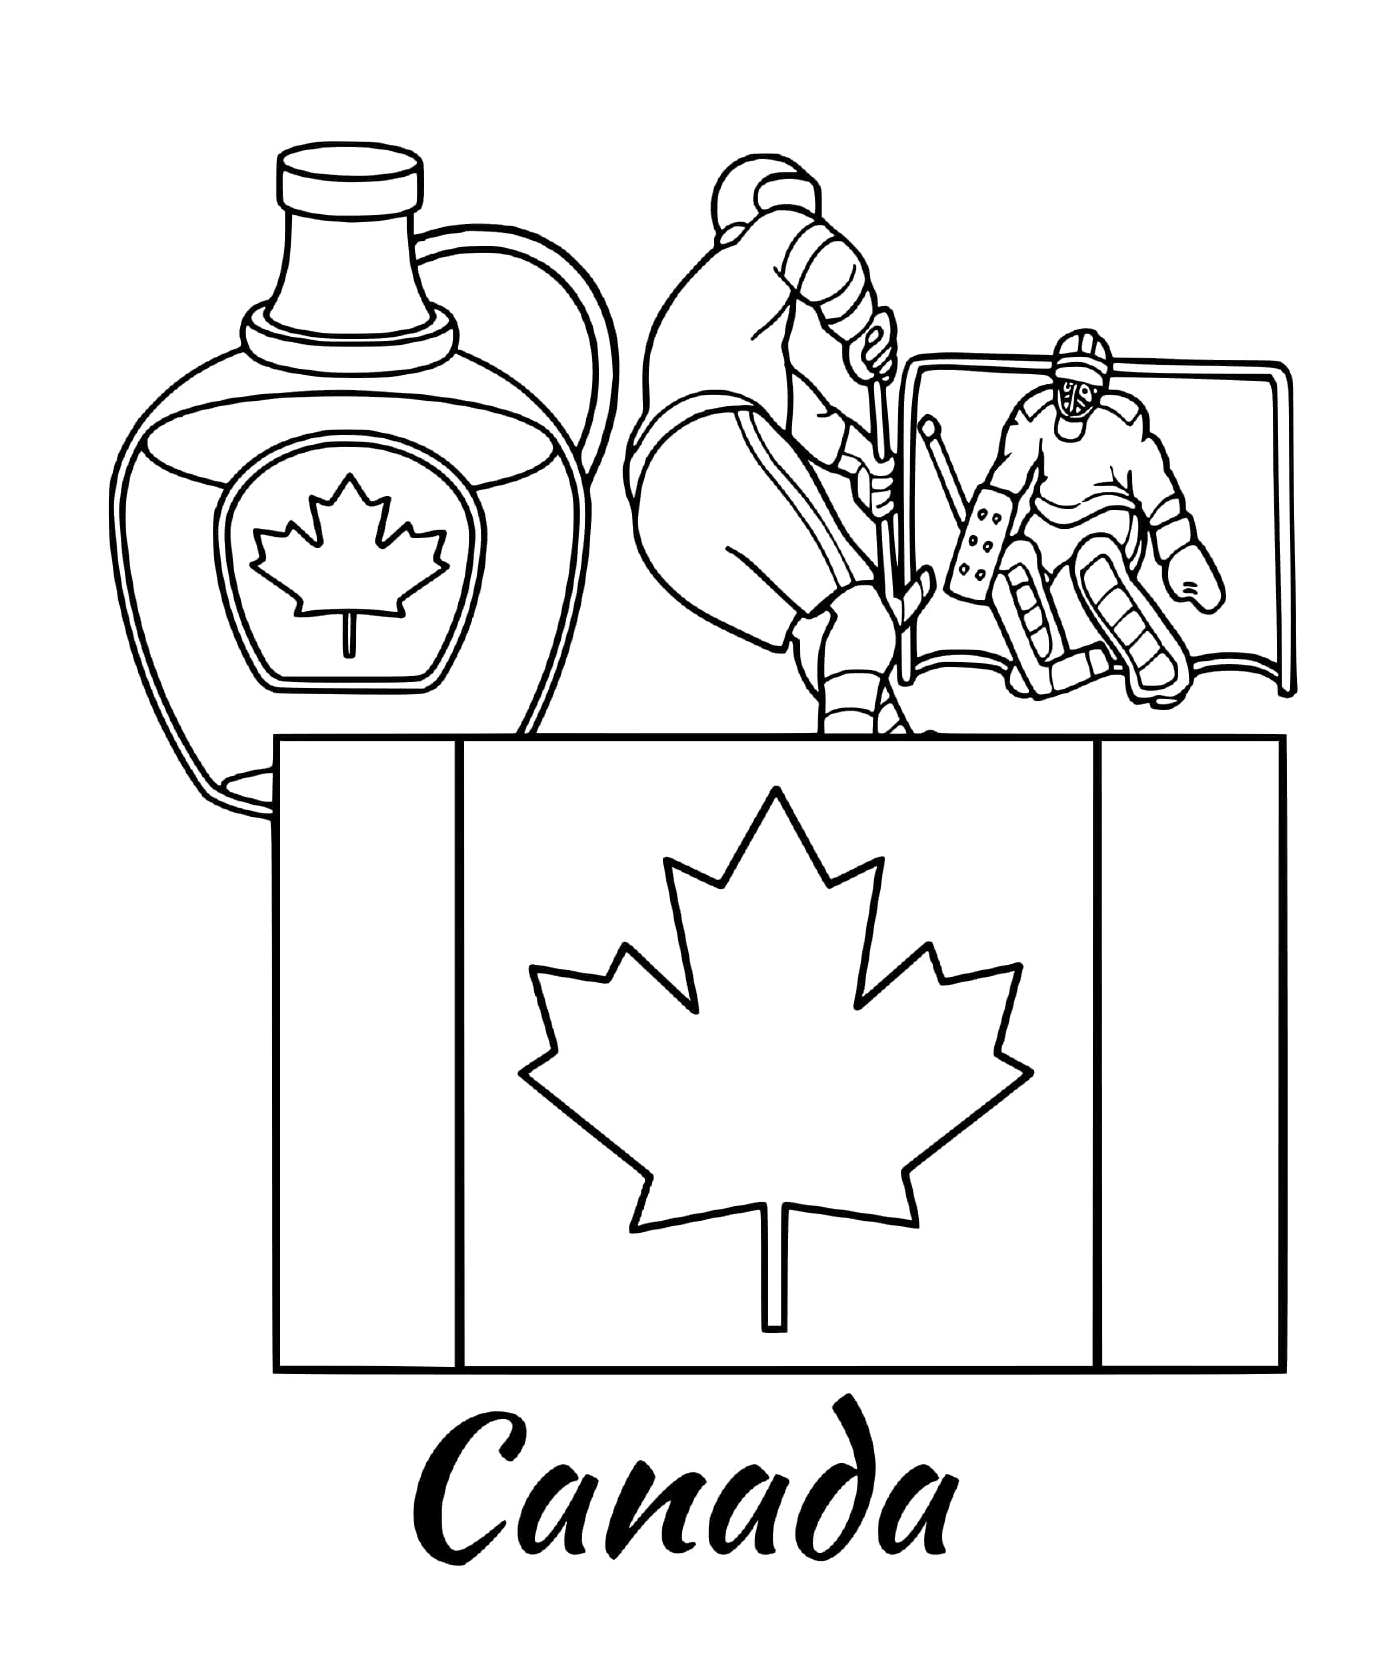  नक्शा के साथ कनाडा का फ्लैग 